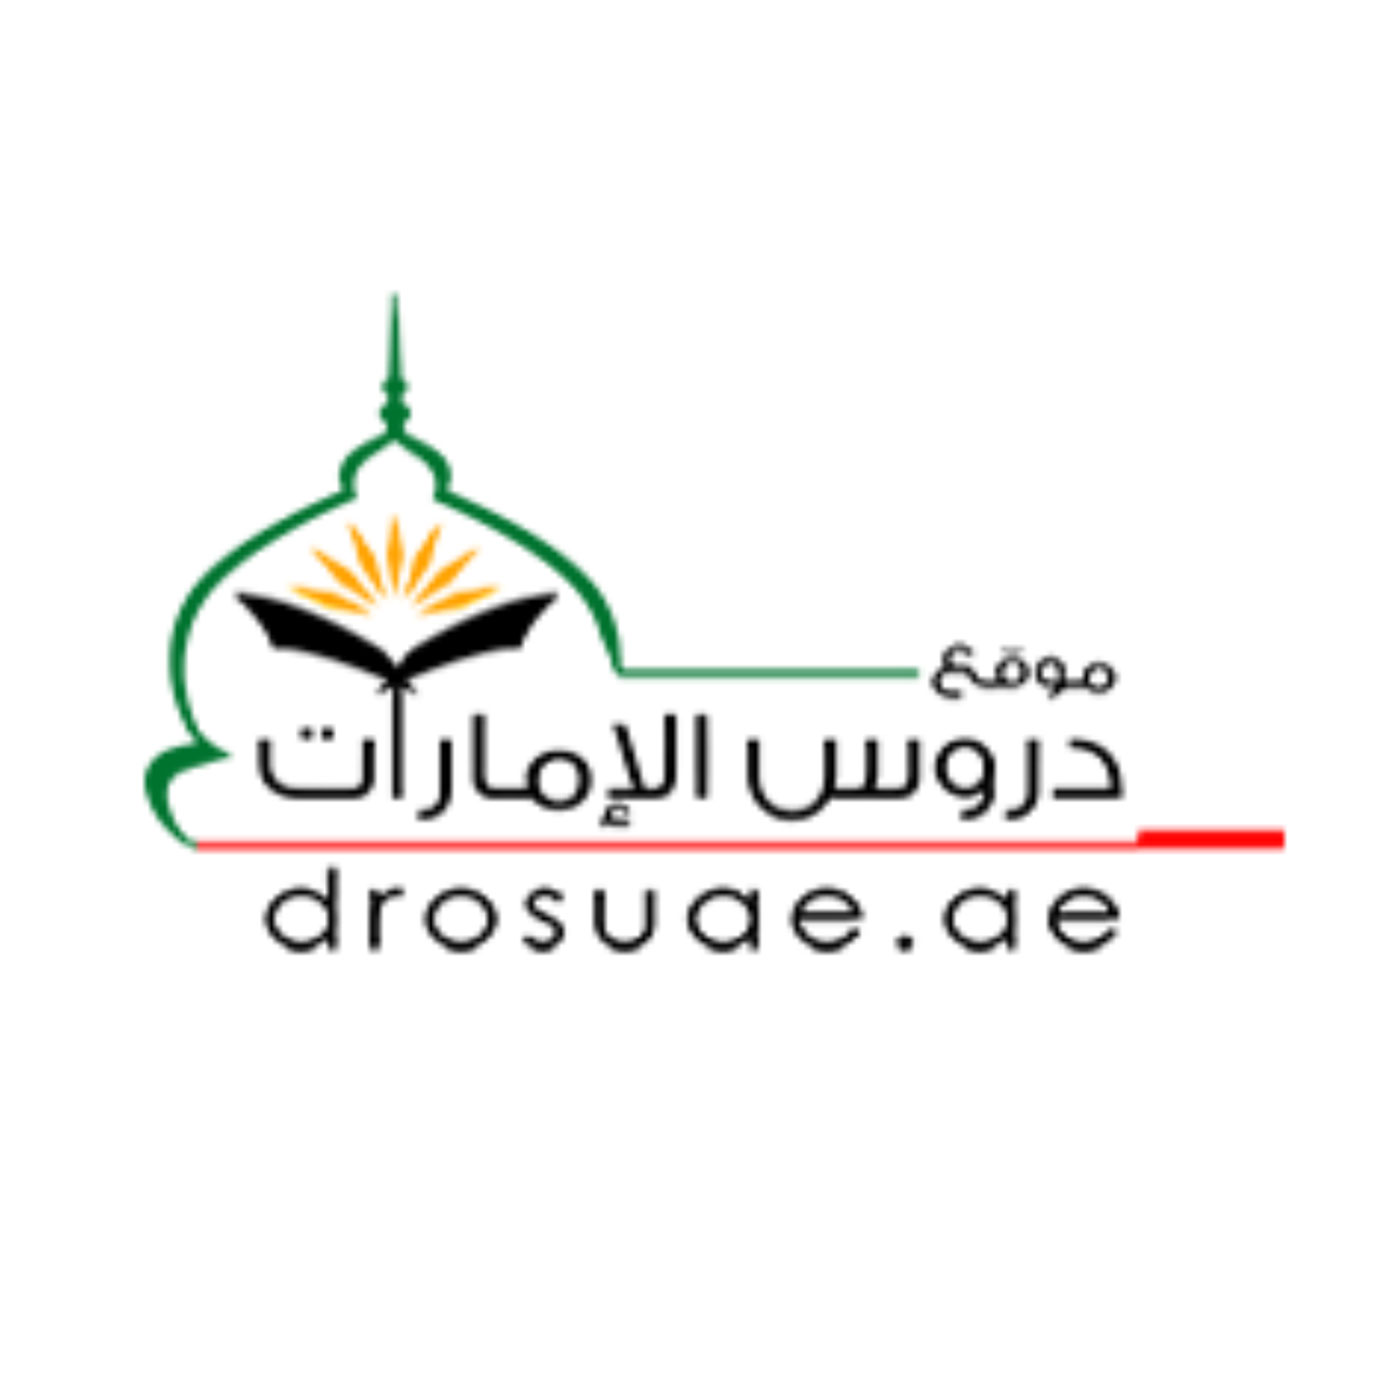 Drosuae » جديد الموقع